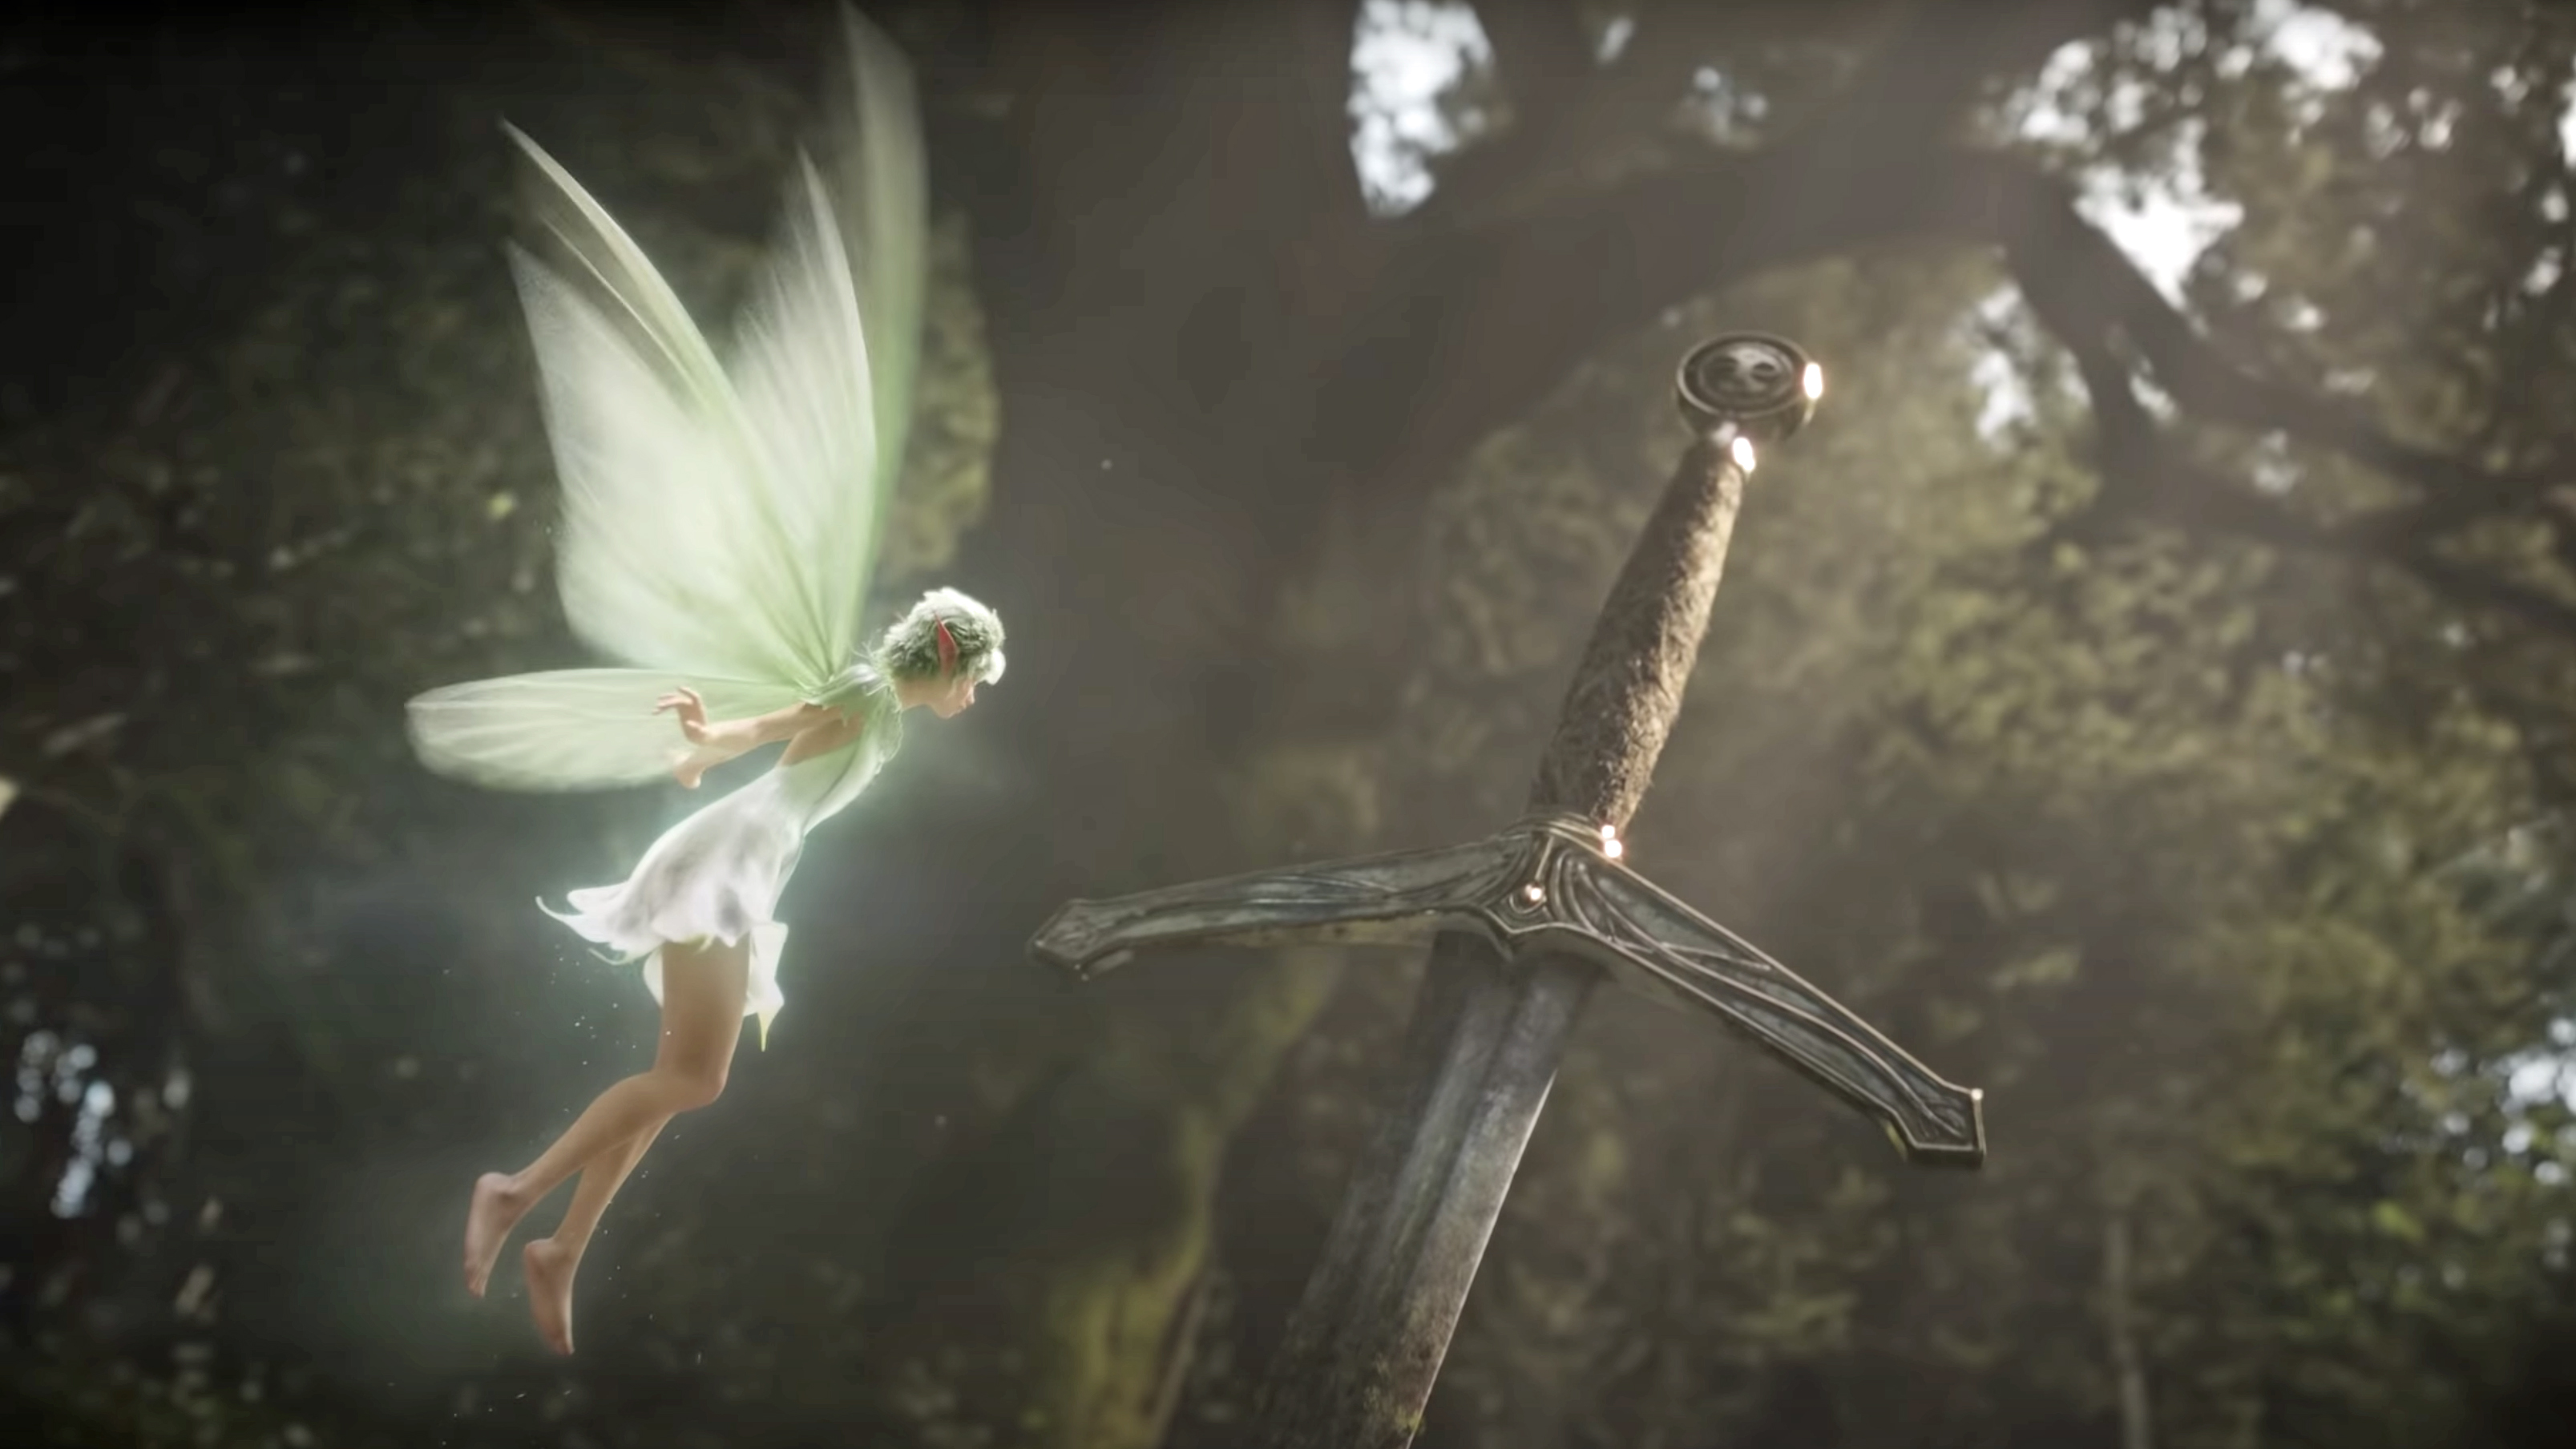 A fairy hovers near the sword